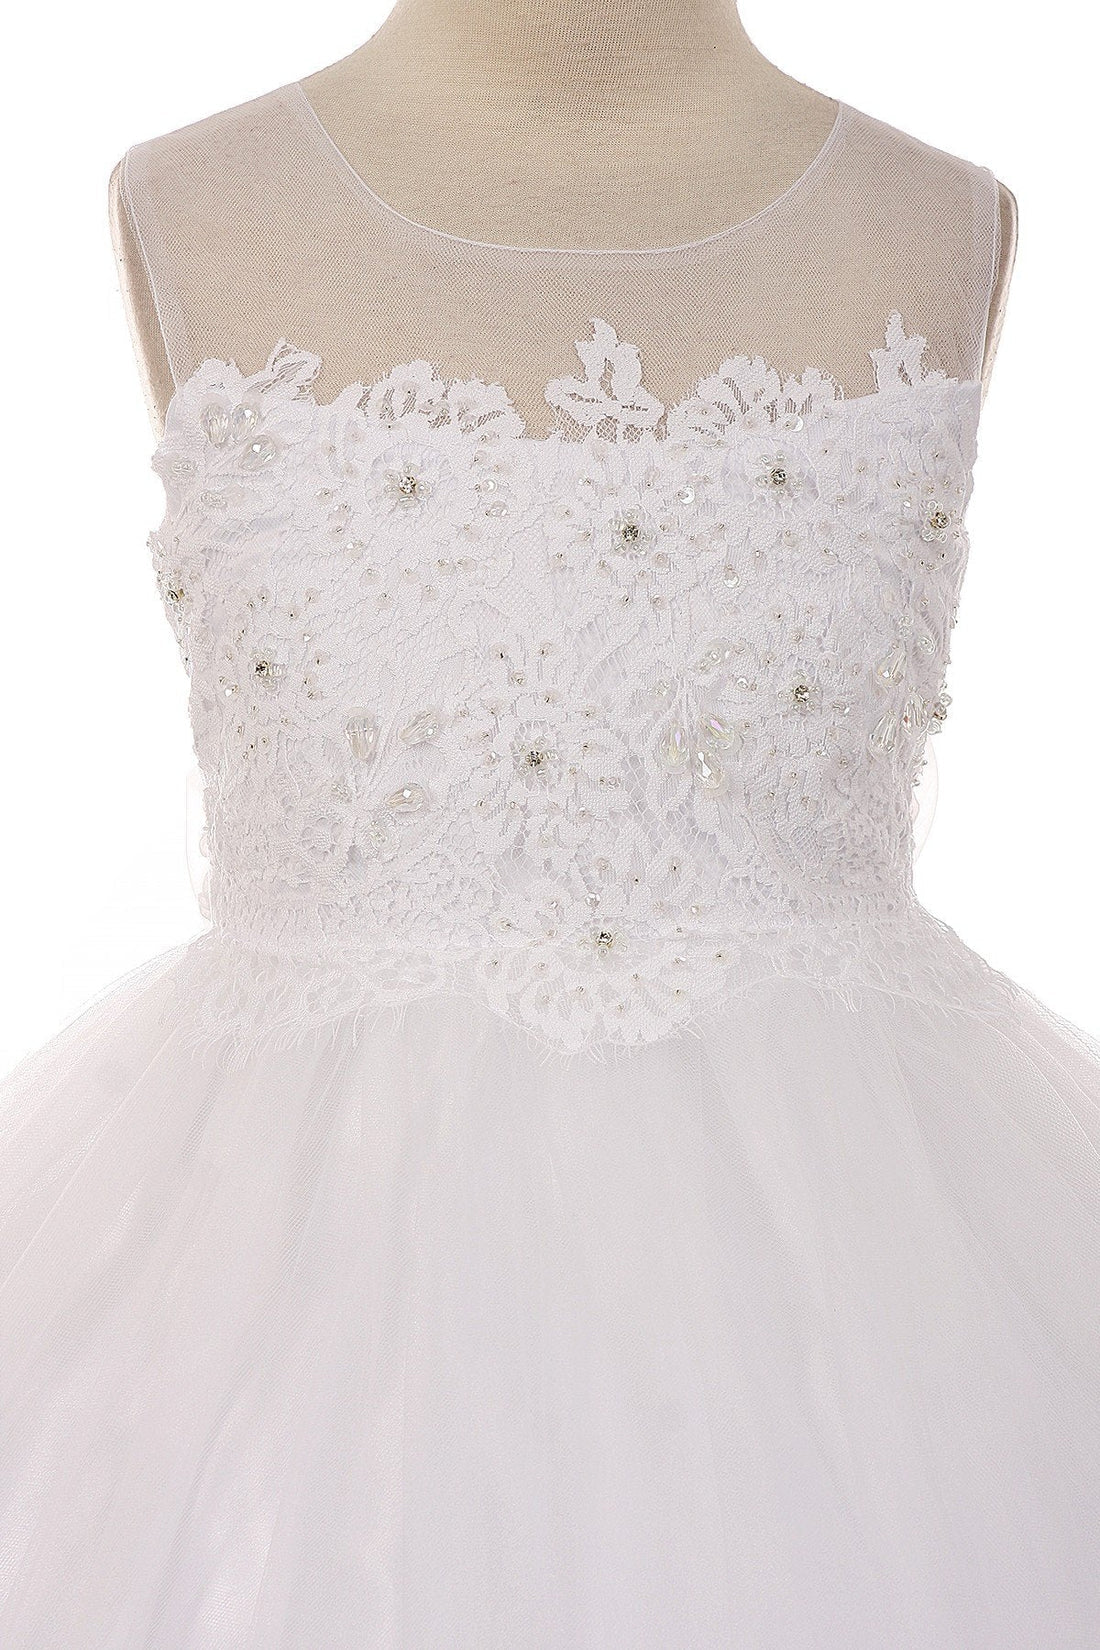 White_1 Girl Dress - Lace Applique Illusion Bateau Dress - AS7007 Kids Dream